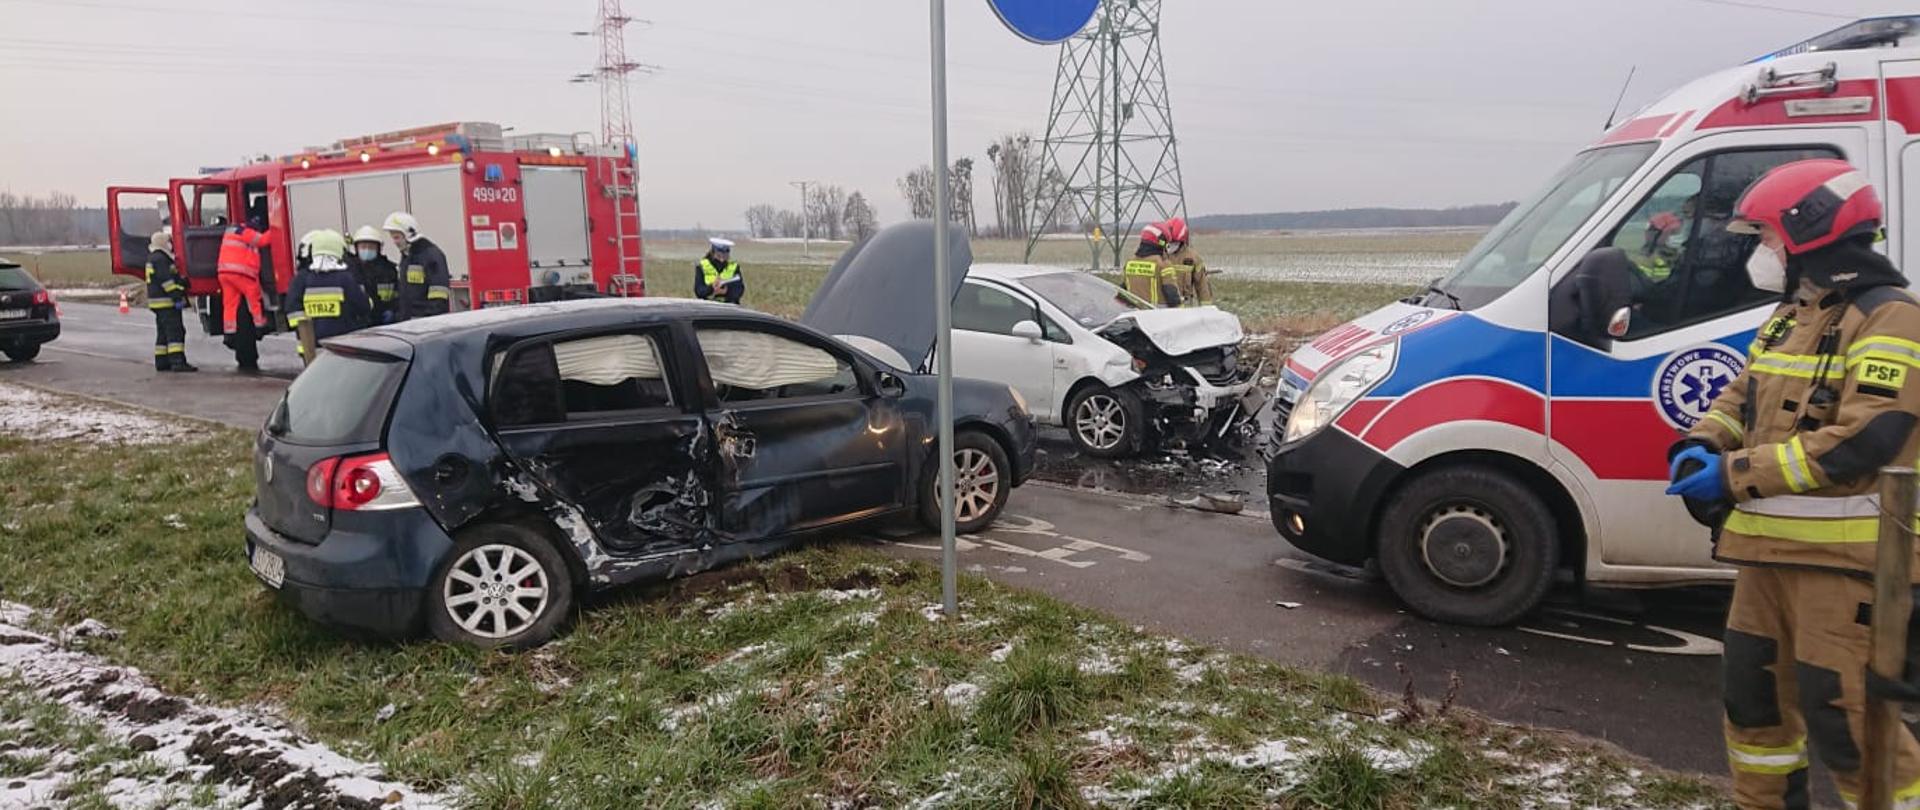 Zdjęcie przedstawia dwa rozbite samochody znajdujące się na jezdni, karetkę pogotowia, samochód pożarniczy i strażaków.